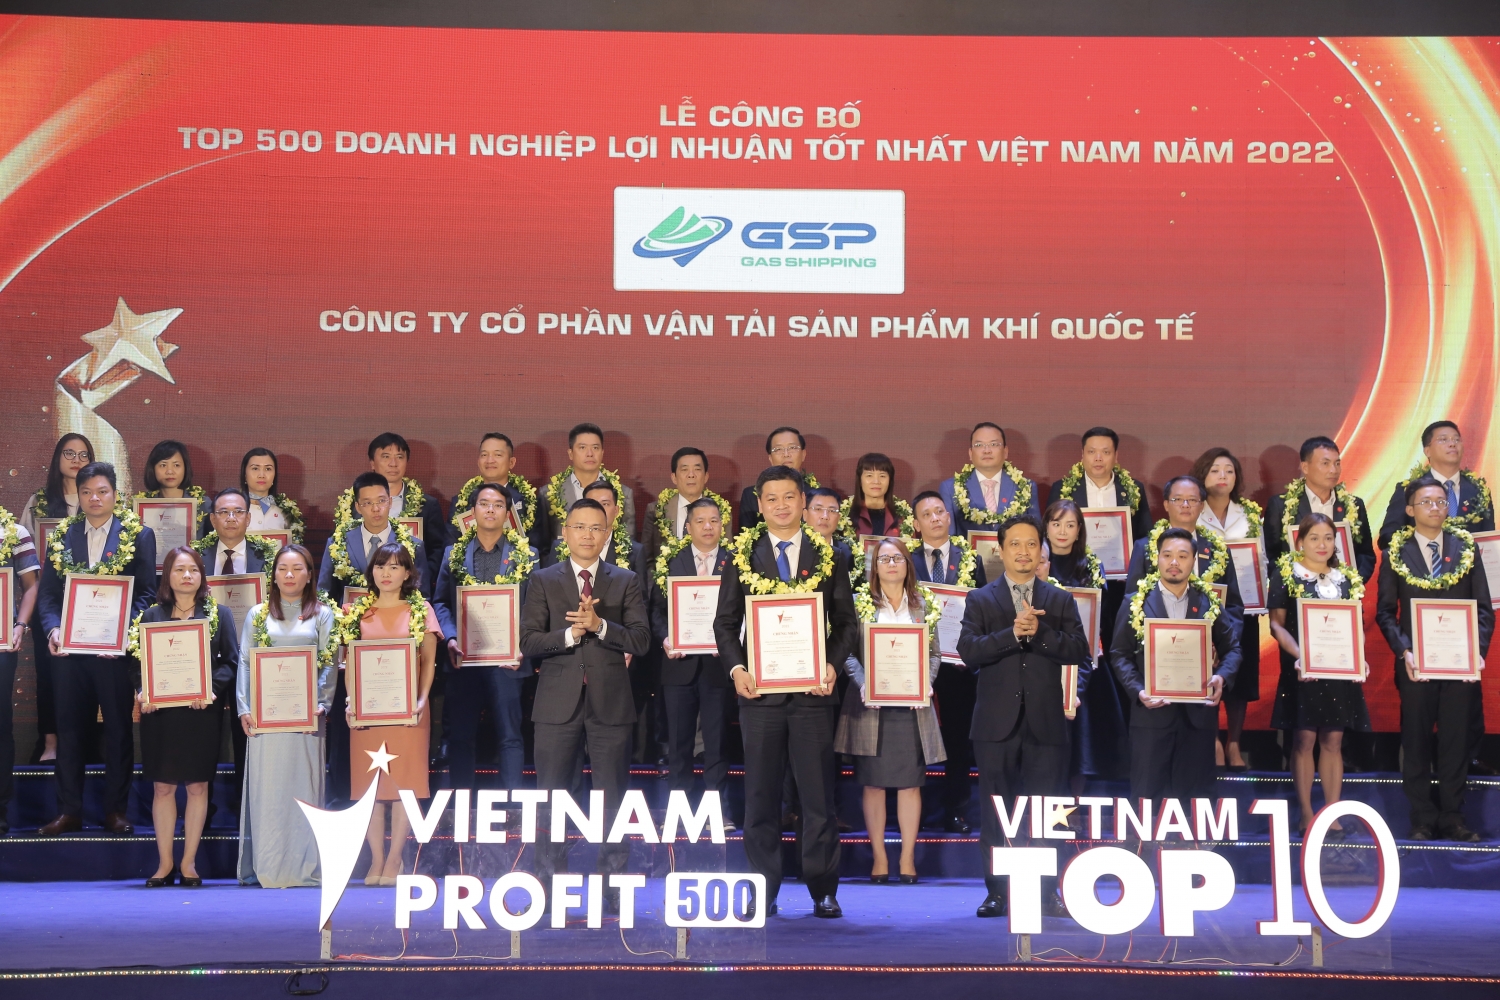 Petrovietnam tiếp tục khẳng định vị trí doanh nghiệp lợi nhuận tốt nhất Việt Nam năm 2022